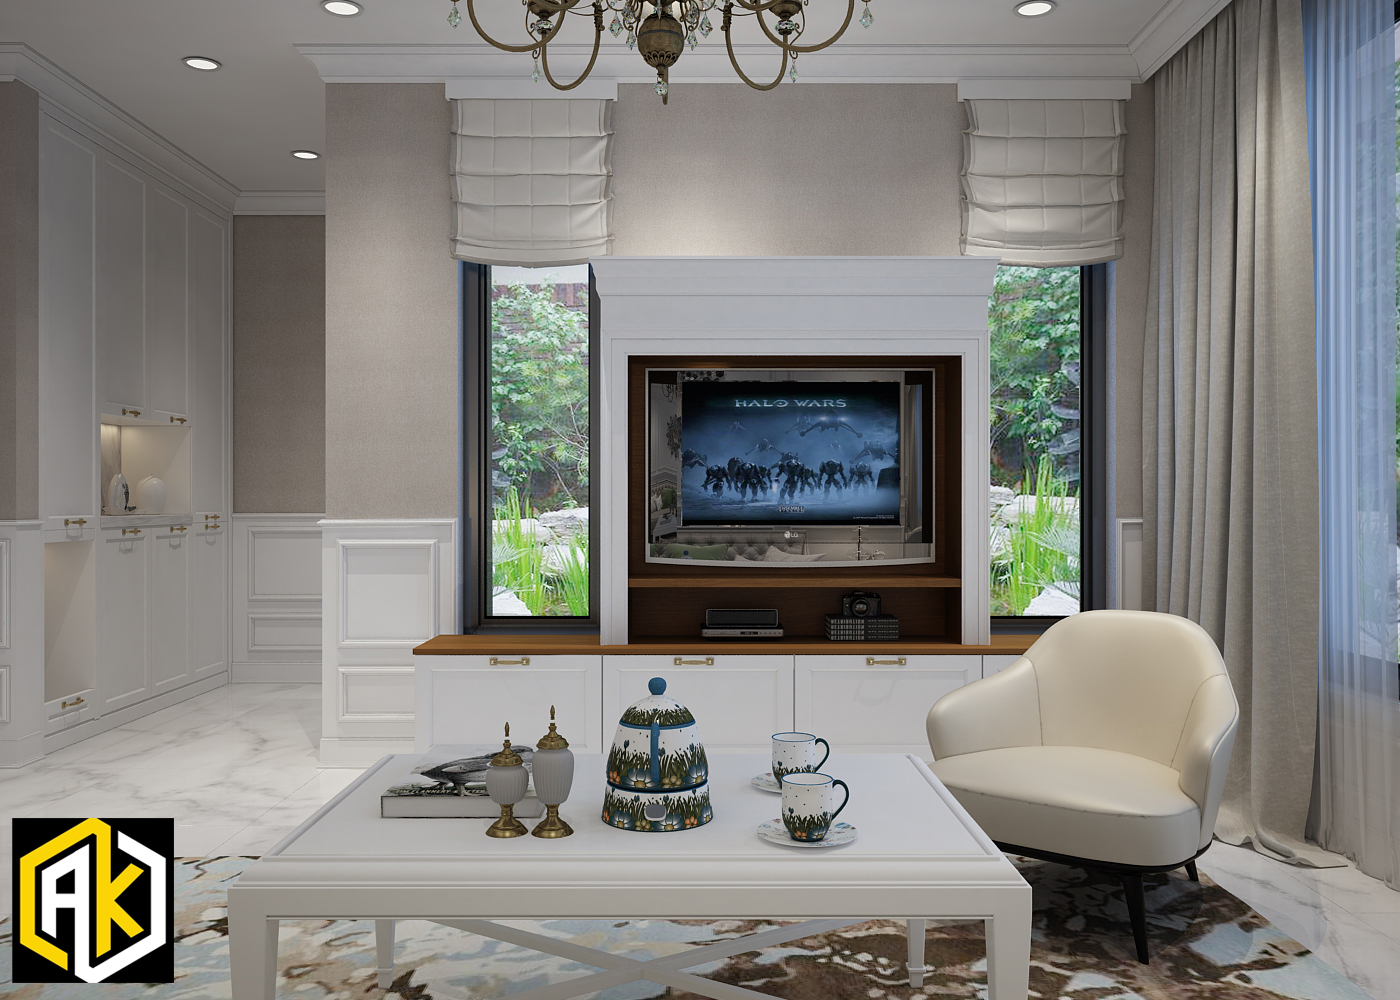 Thiết kế nội thất phòng khách theo phong cách tân cổ điển - nếu bạn đang sở hữu nhà phố thì hãy thiết kế thêm với đèn chùm hoặc tranh nghệ thuật đi chung